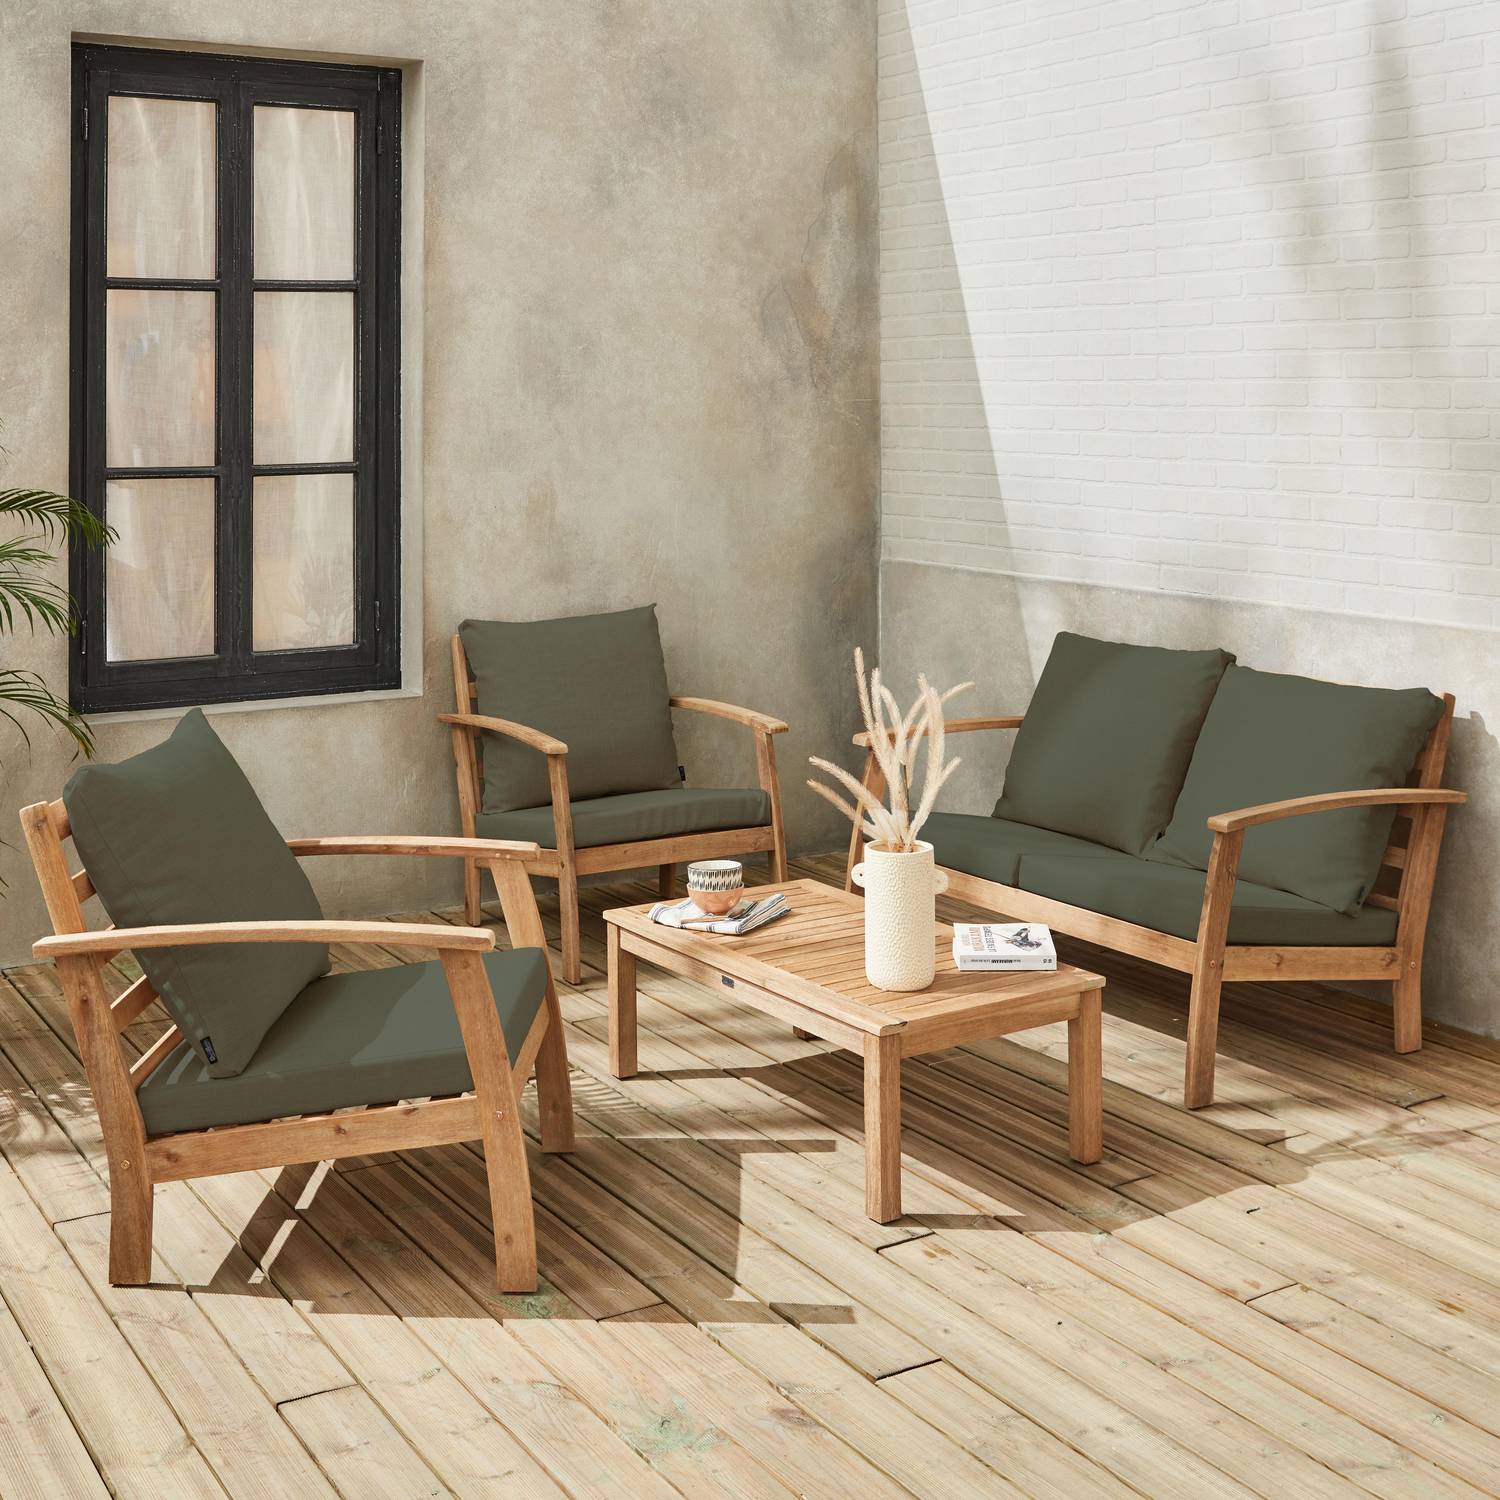 Salon de jardin en bois 4 places Coussins Savane, canapé, fauteuils et table basse en acacia, design Photo2